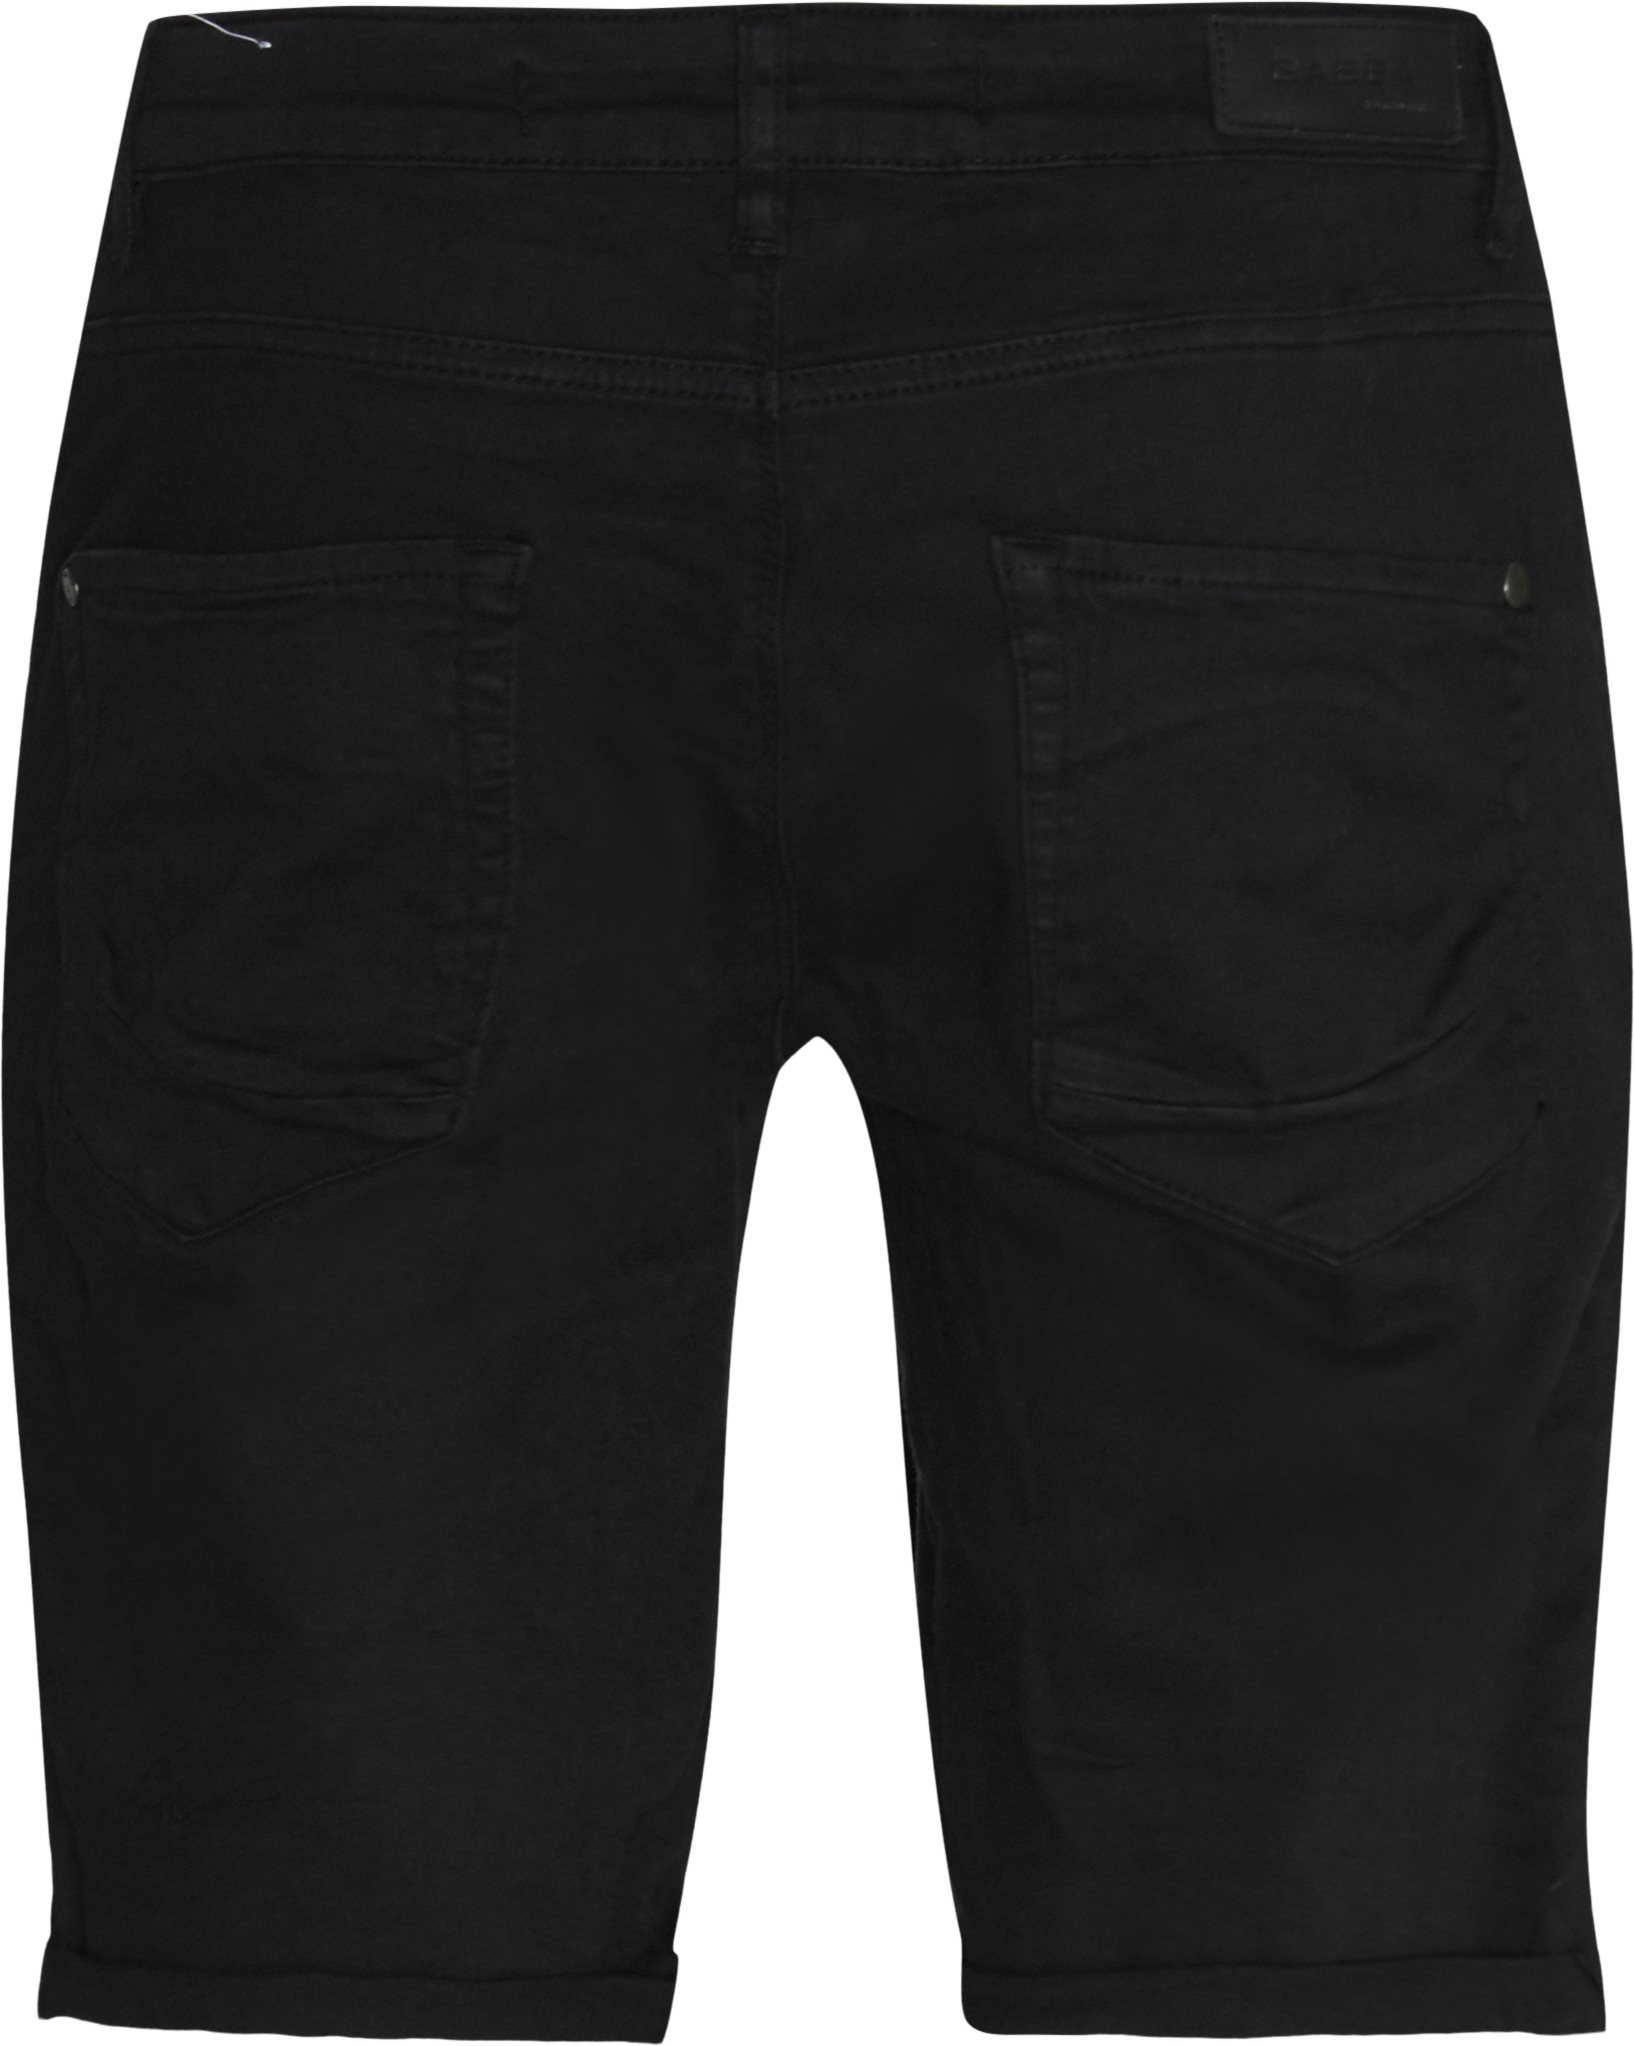 Jason K2666 Shorts - Shorts - Regular fit - Svart